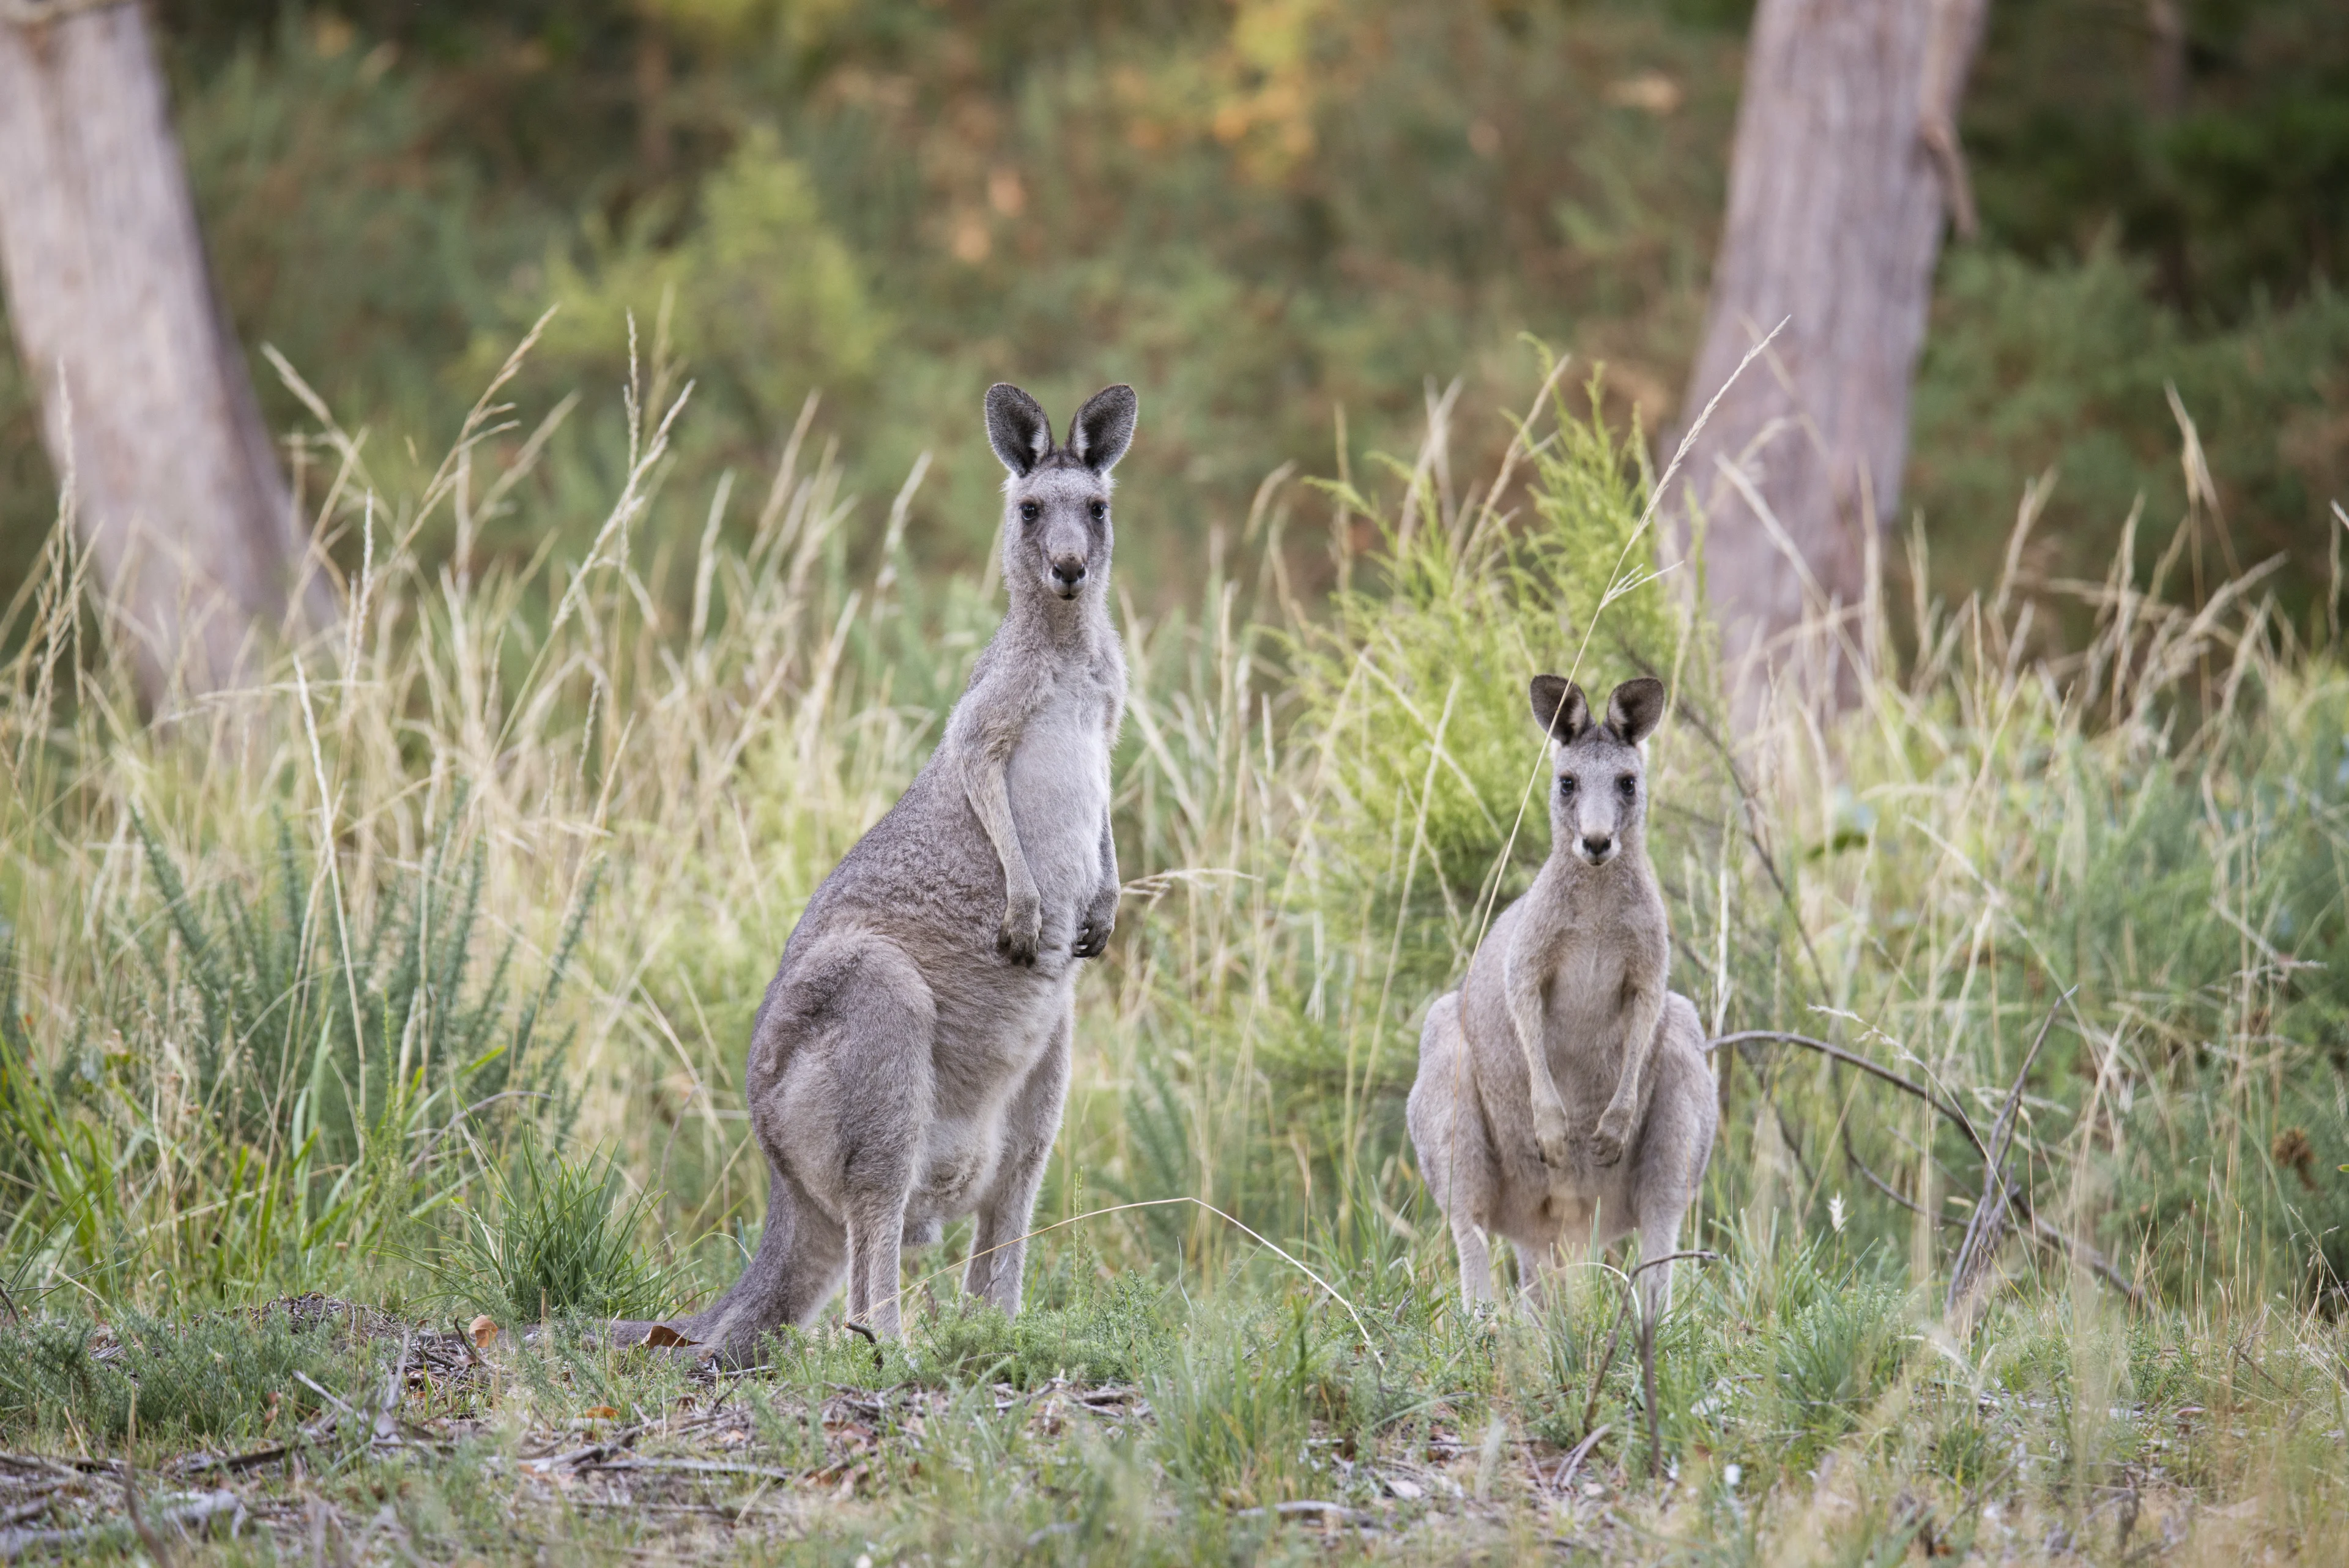 Two kangaroos at Woowookarung Regional Park, Ballarat